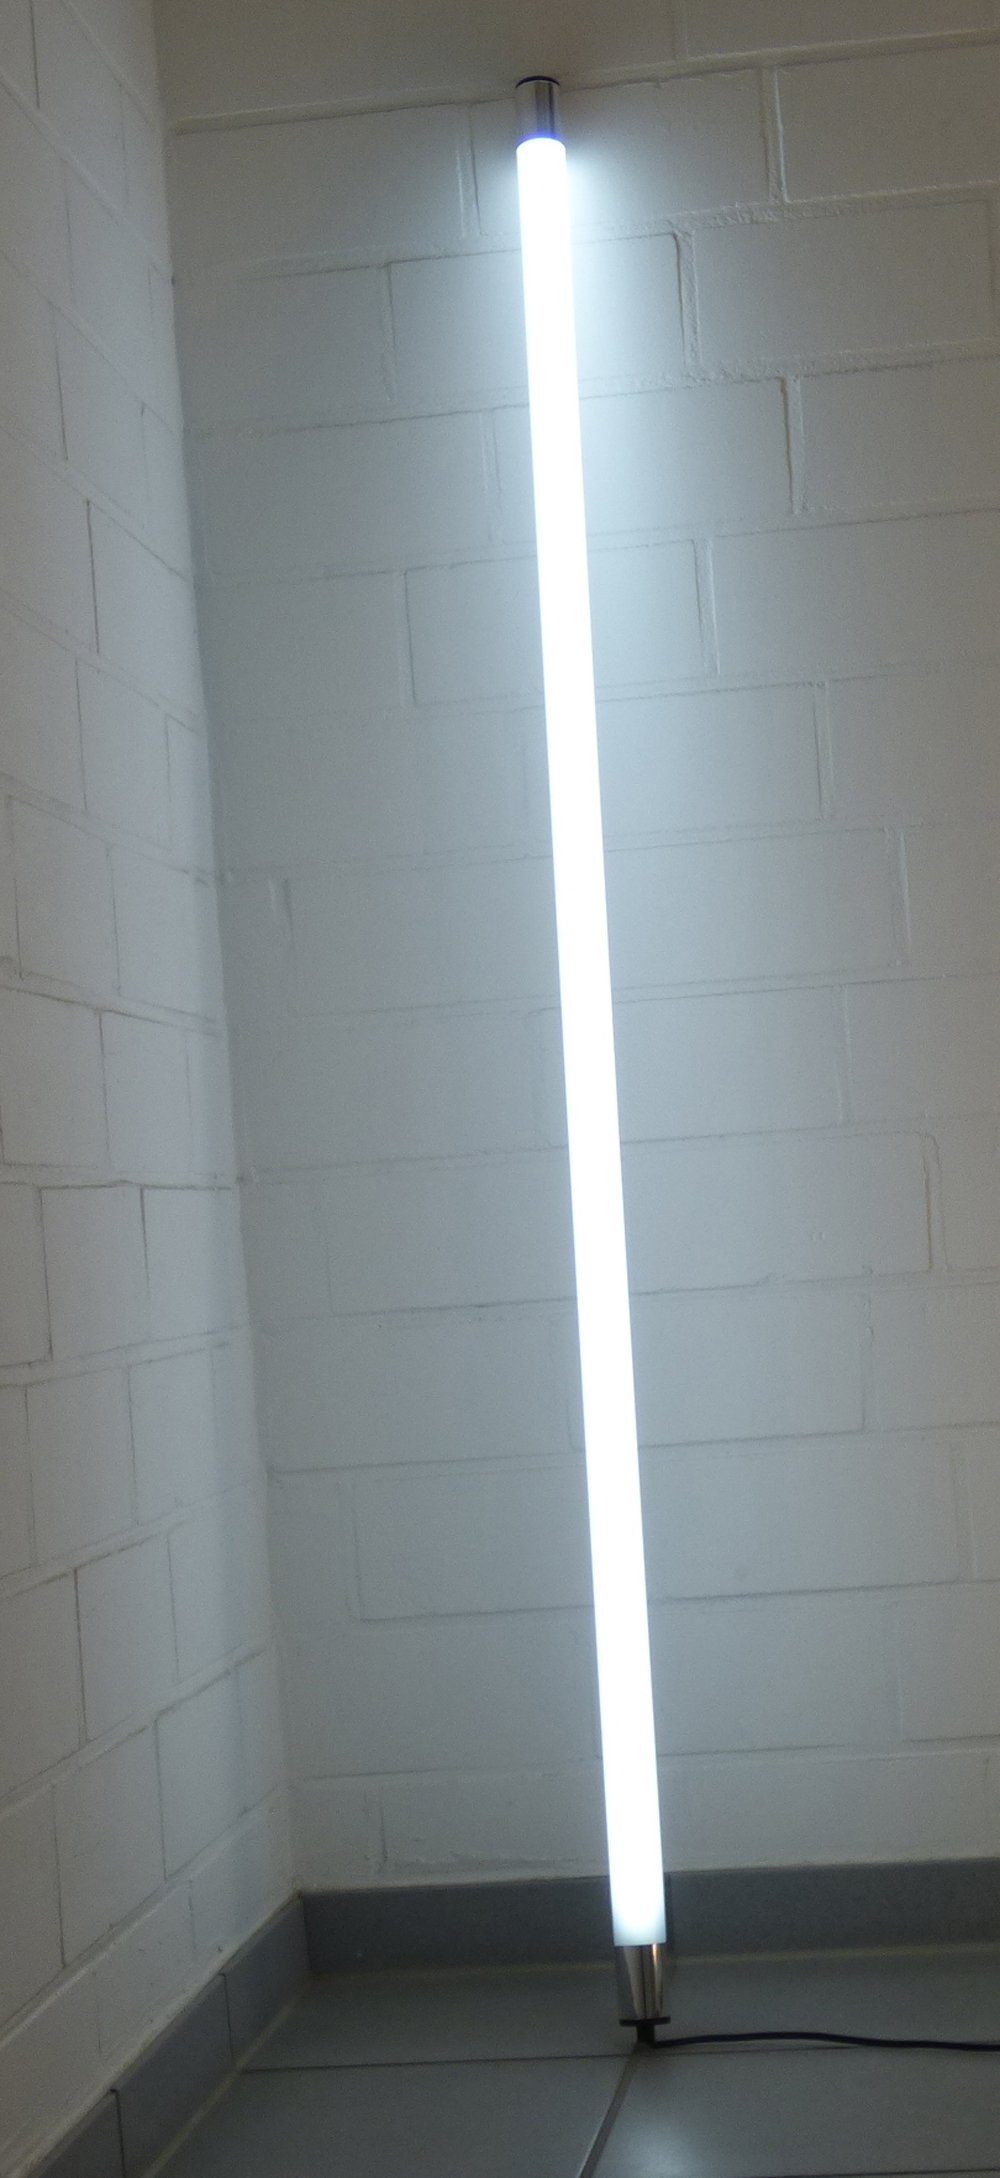 XENON LED Wandleuchte 8381 LED Leuchtstab Satiniert 1,53m 2200 Lumen IP44 Außen Kalt Weiß, LED, Xenon / Kaltweiß | Wandleuchten